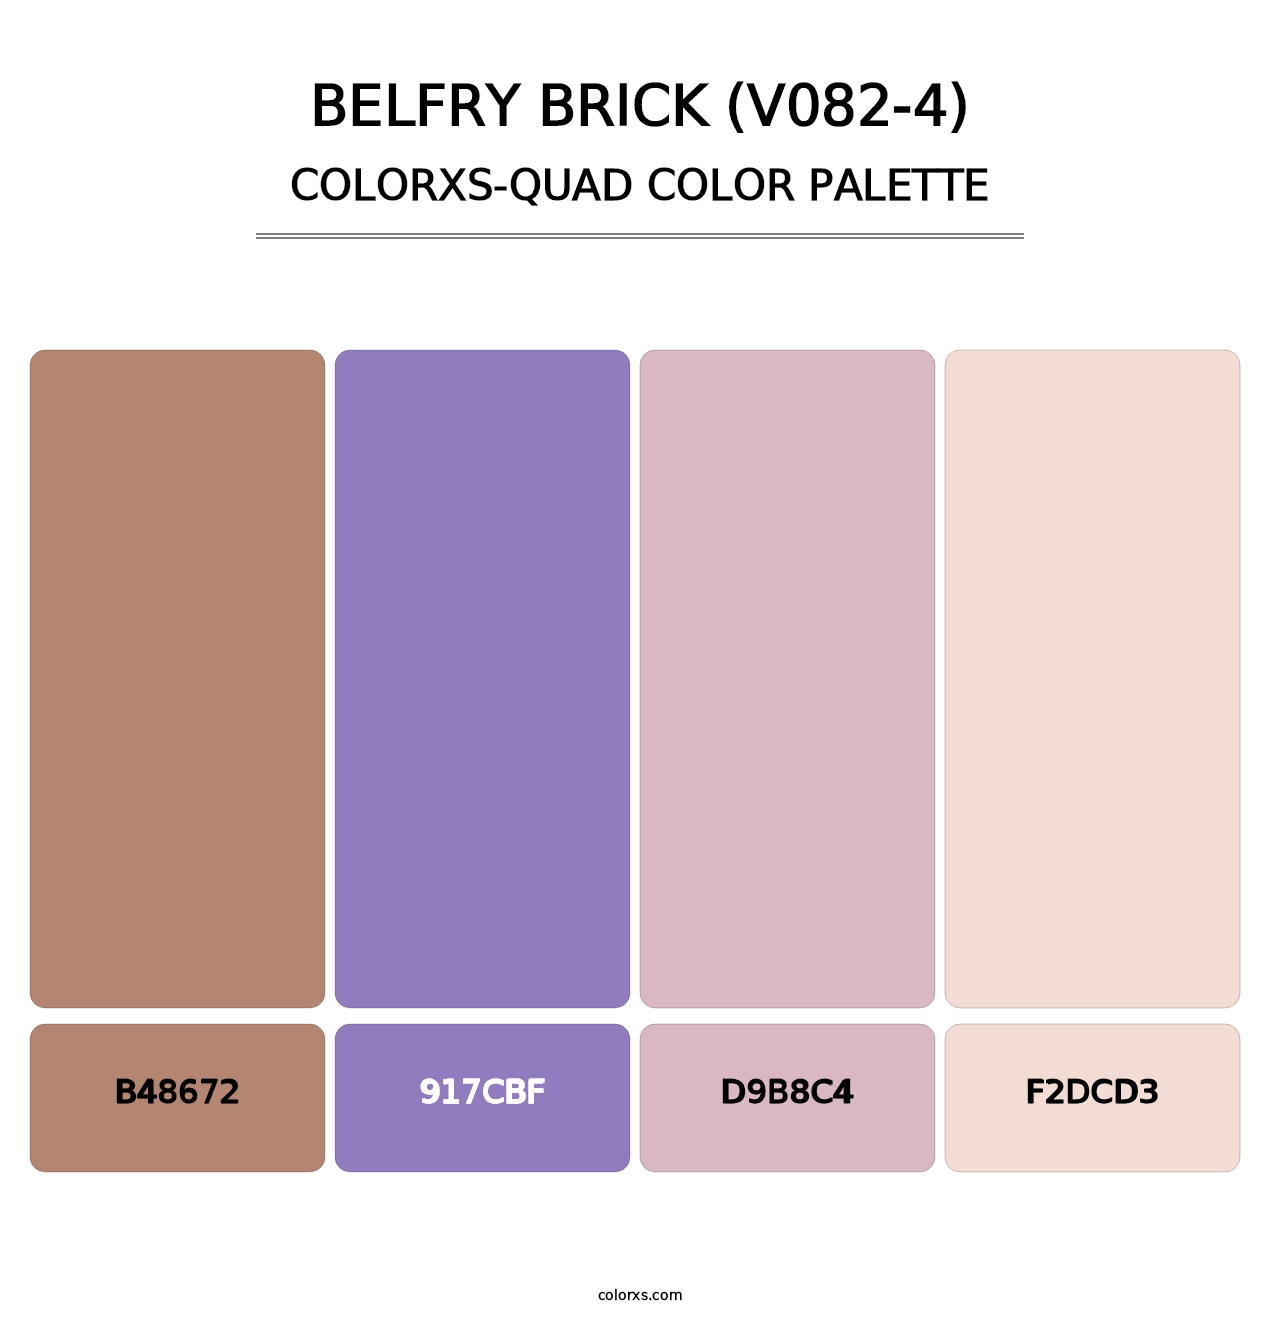 Belfry Brick (V082-4) - Colorxs Quad Palette